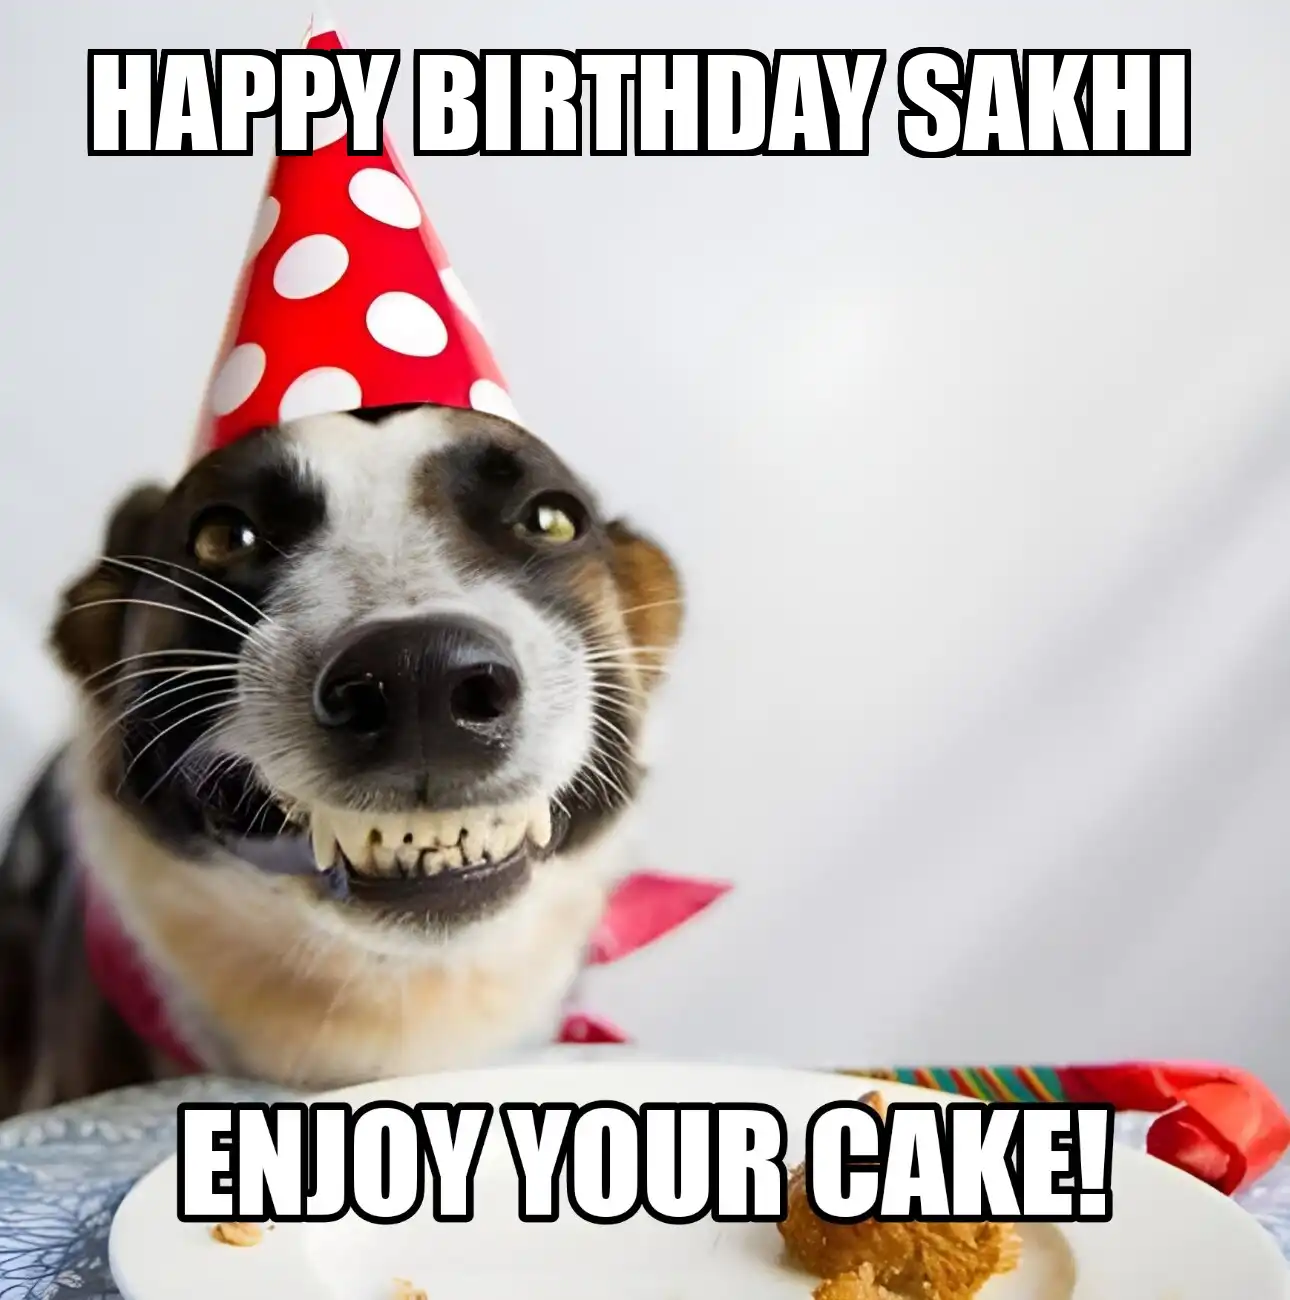 Happy Birthday Sakhi Enjoy Your Cake Dog Meme